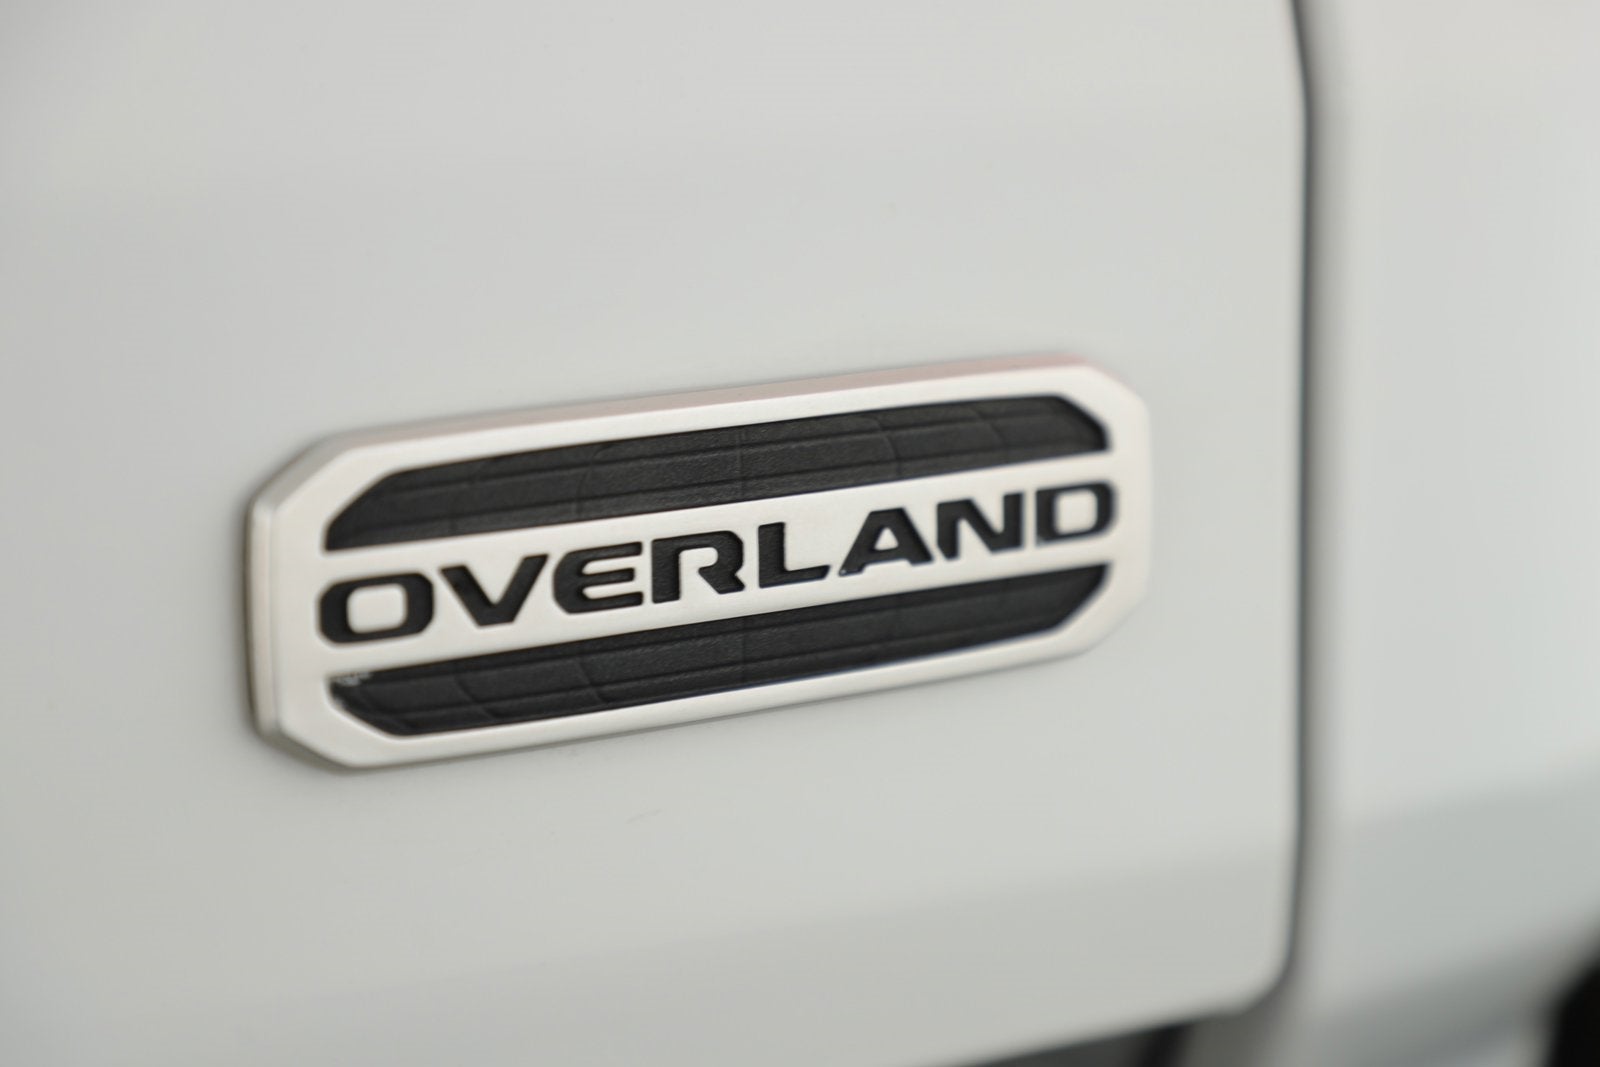 2021 Jeep Gladiator Overland 4X4